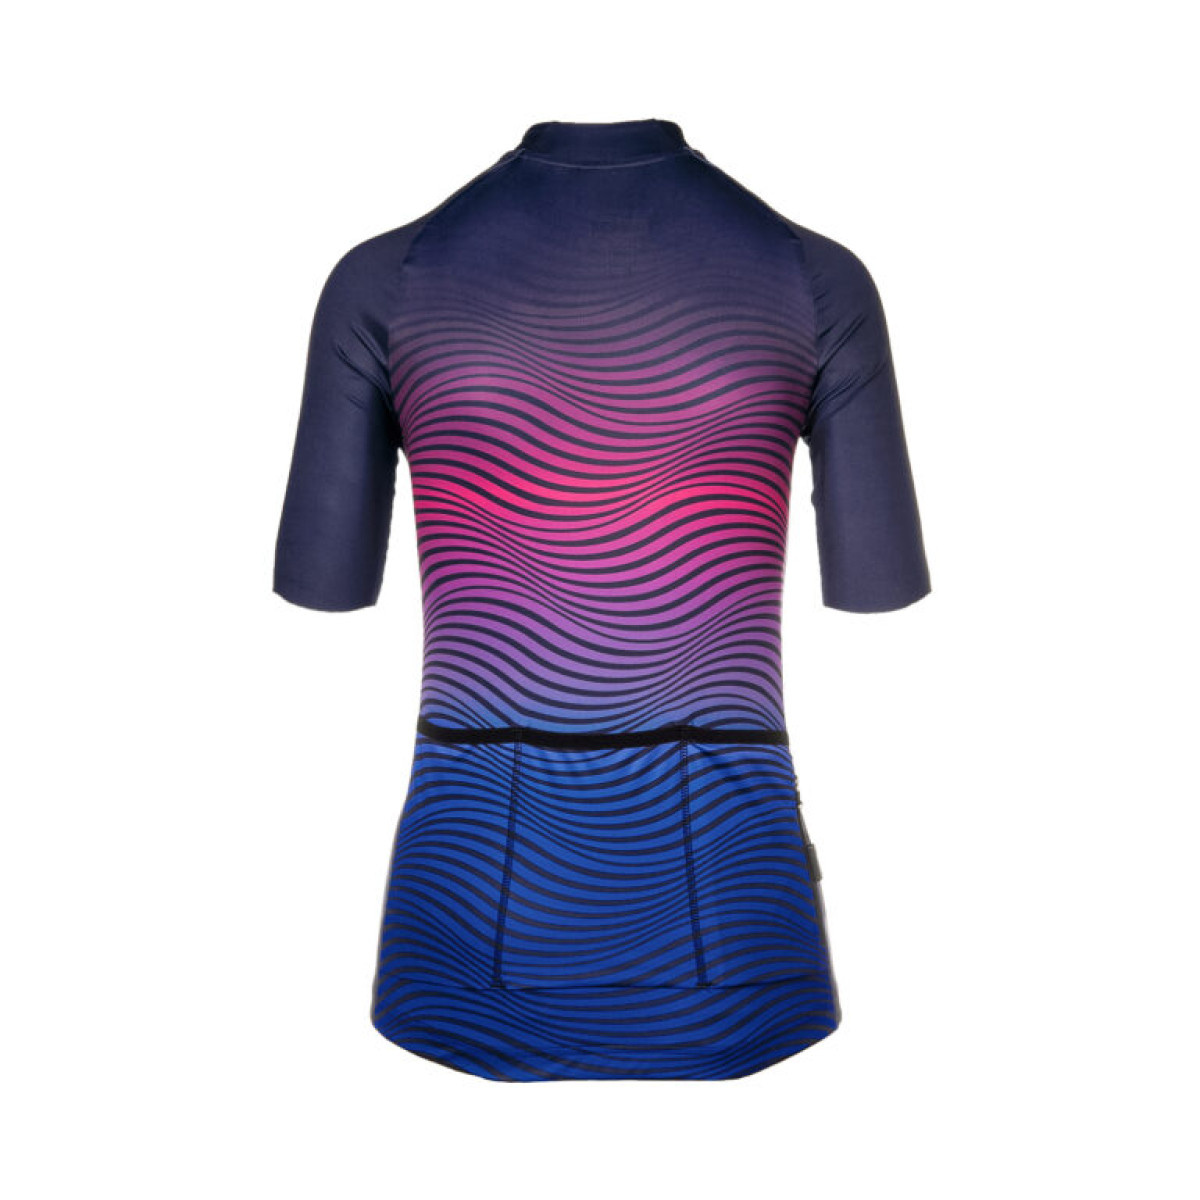 Bioracer Vesper moteriški marškinėliai / New Wave - Navy Pink